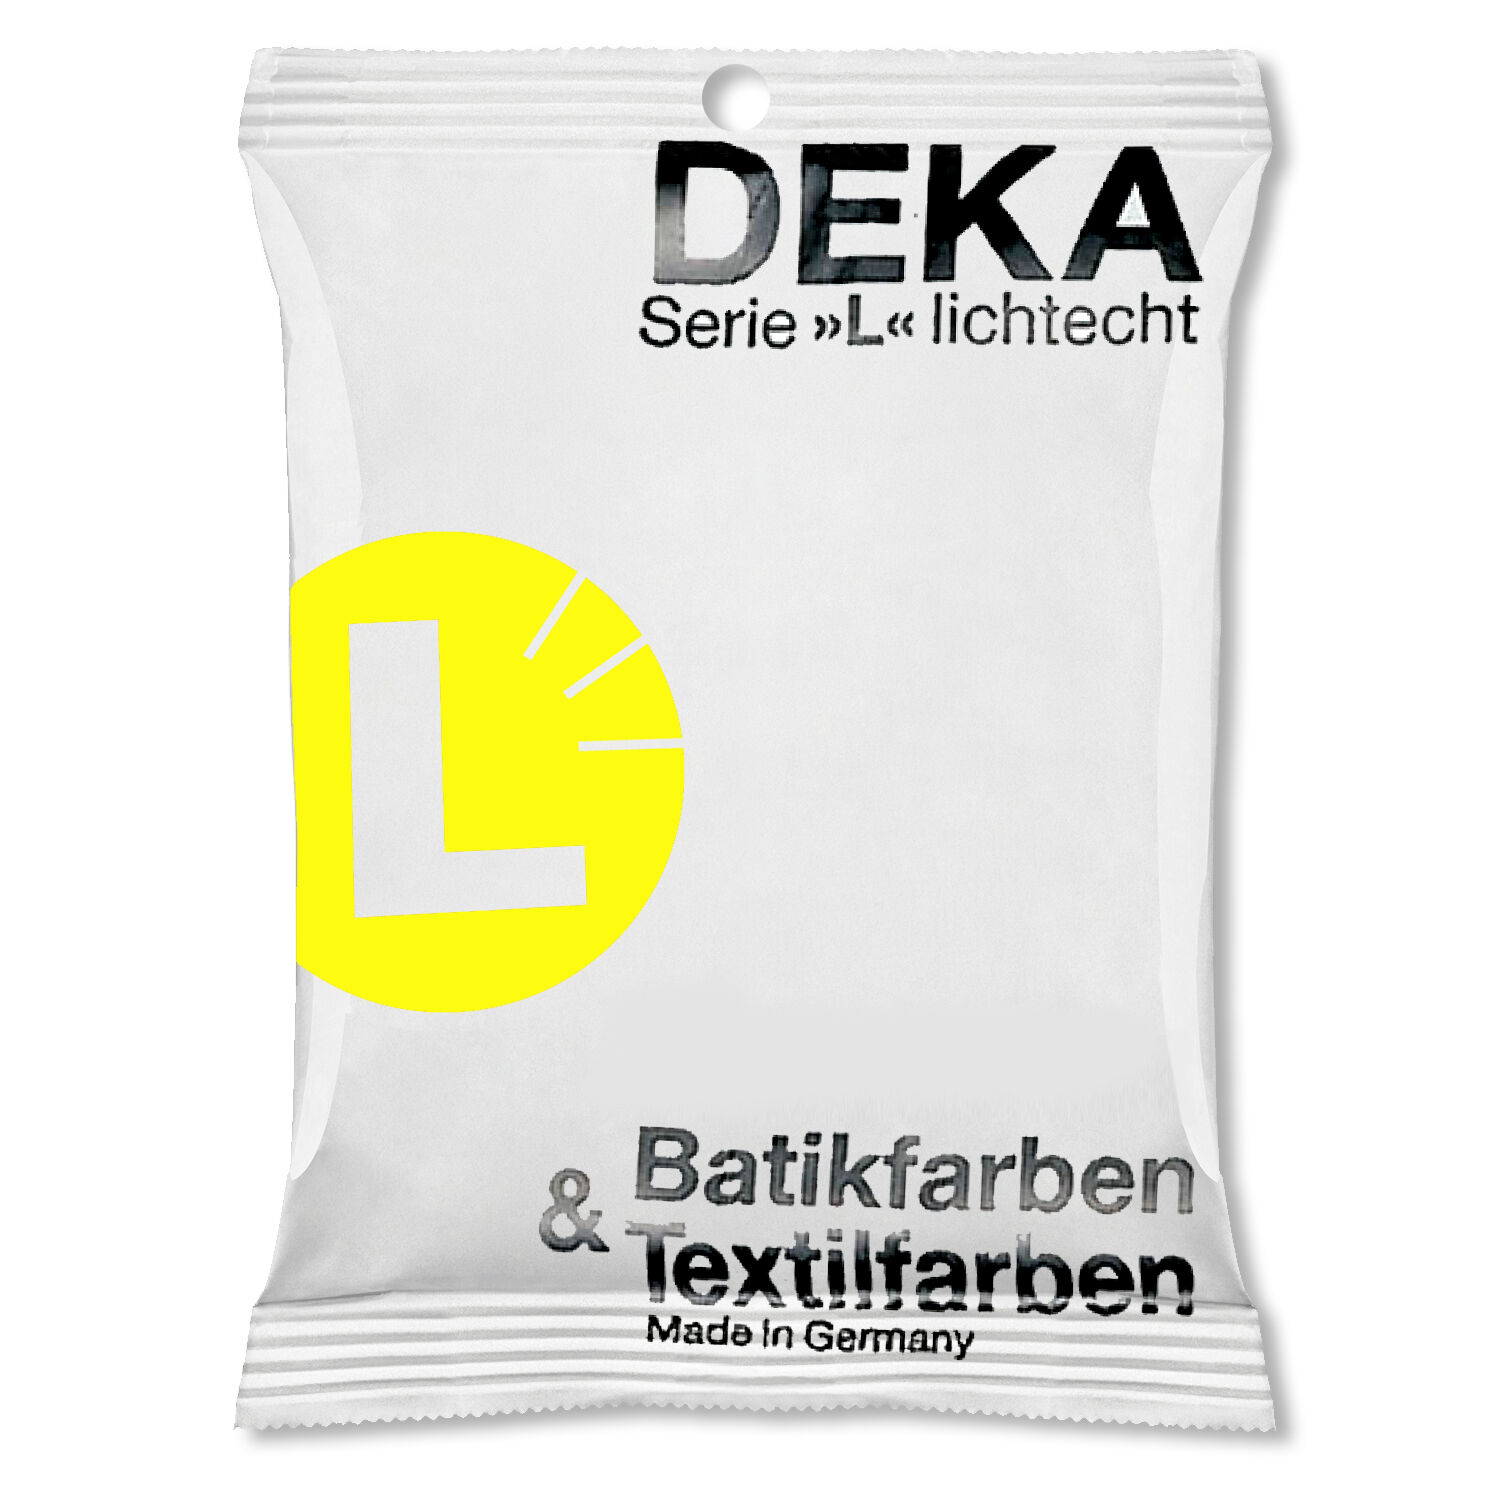 DEKA-Textilfarbe/ Batikfarben / Stoff-Färbefarben, Serie L, 10g, Zitron